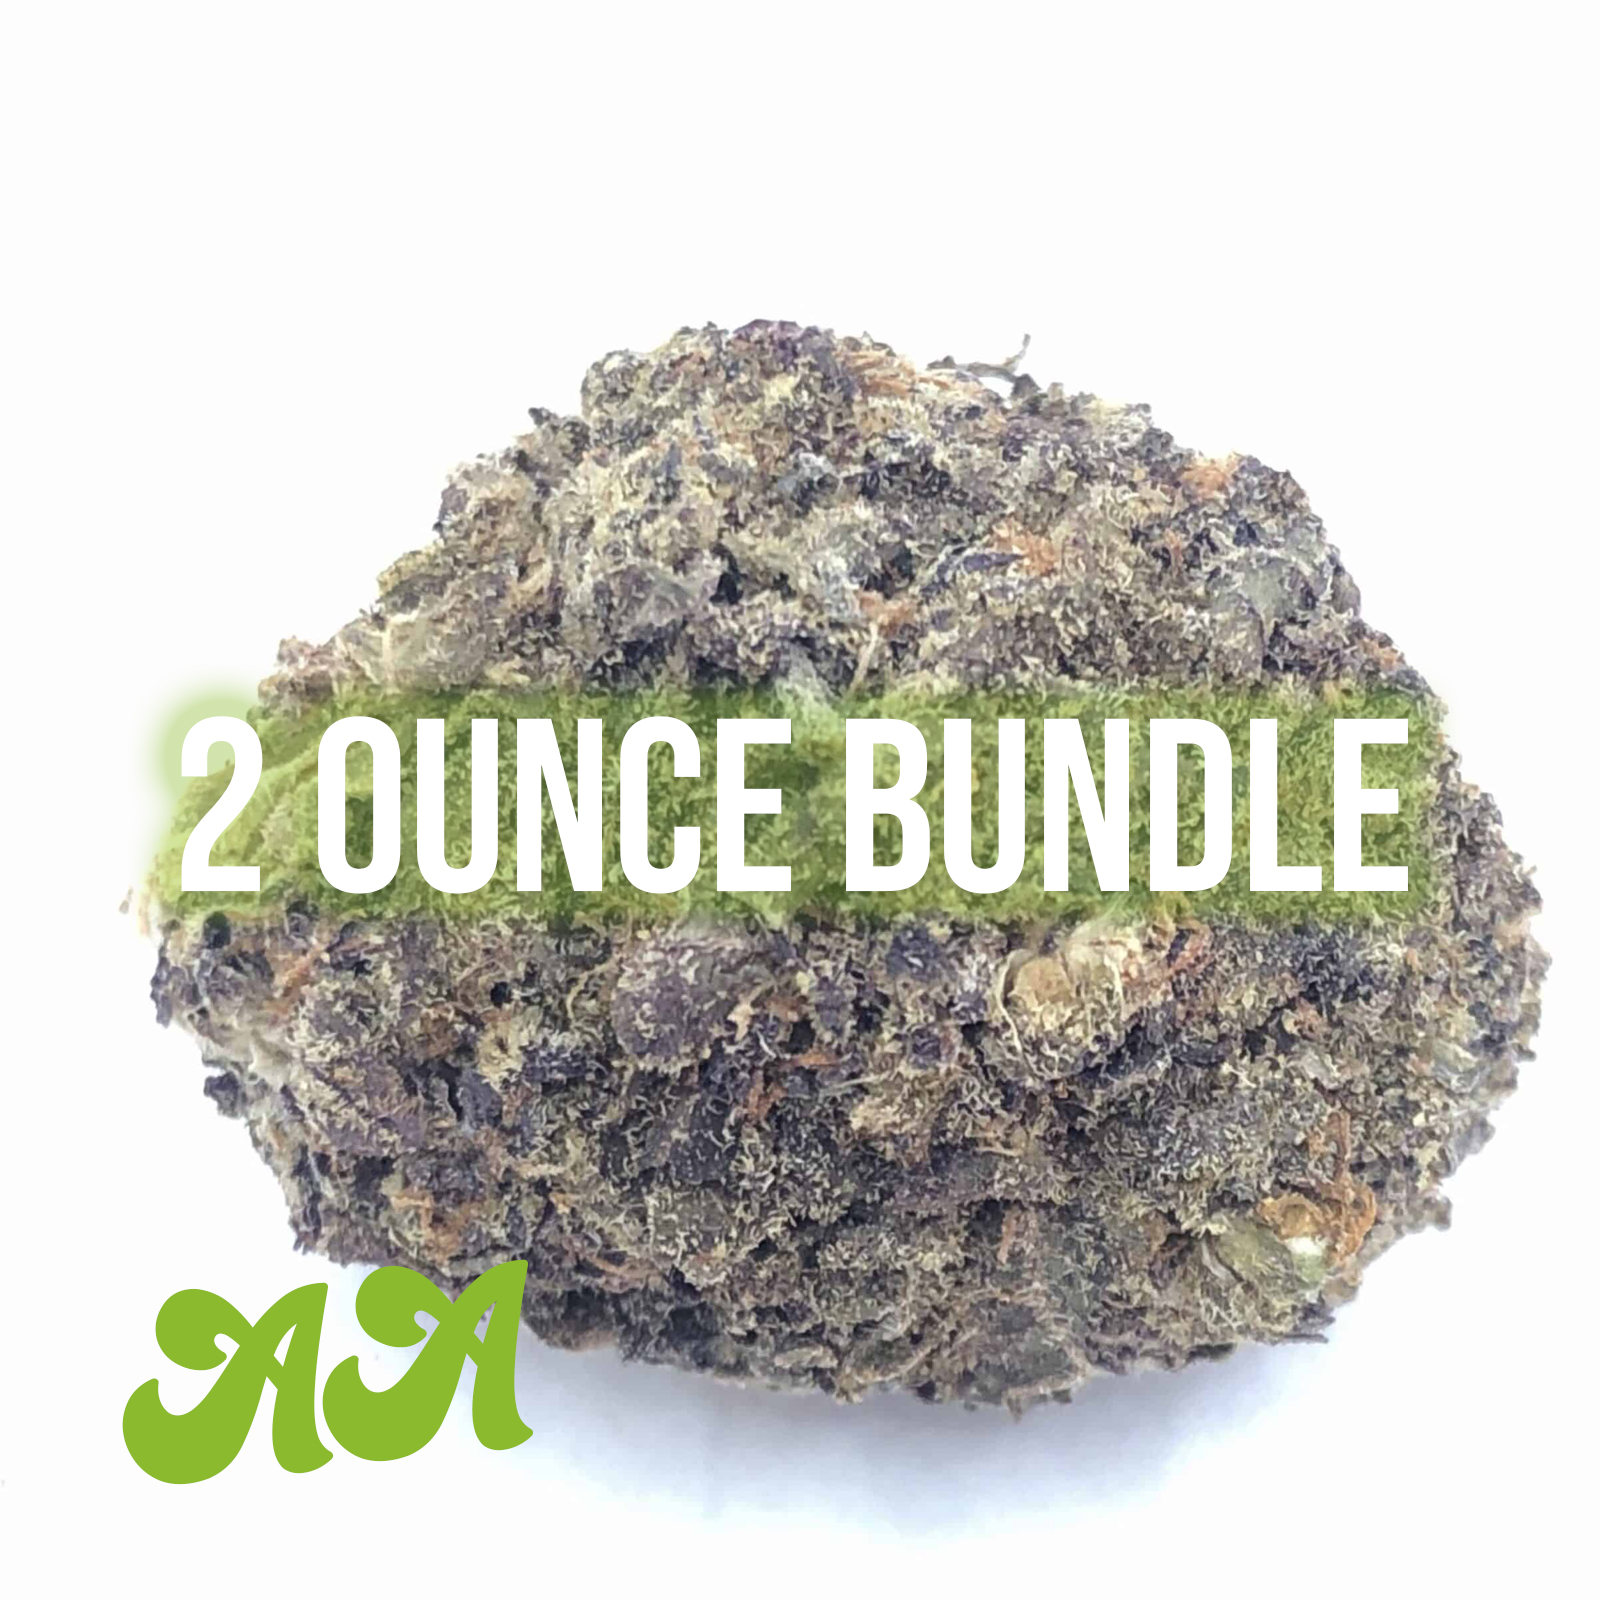 AA 2 ounce bundle